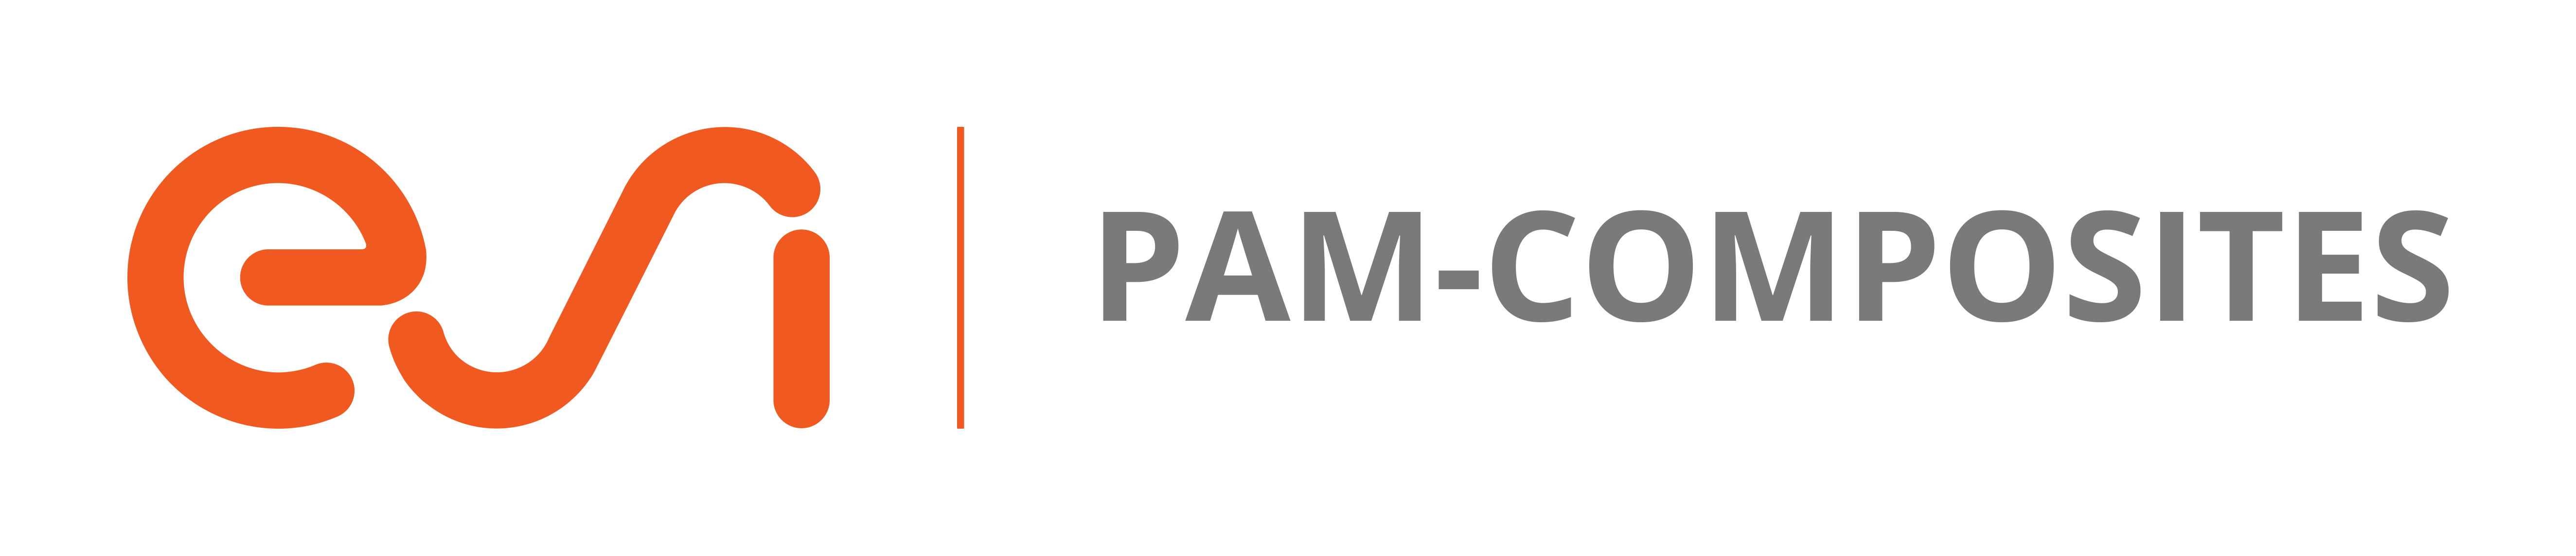 複合材解析ソリューション「PAM-COMPOSITES」